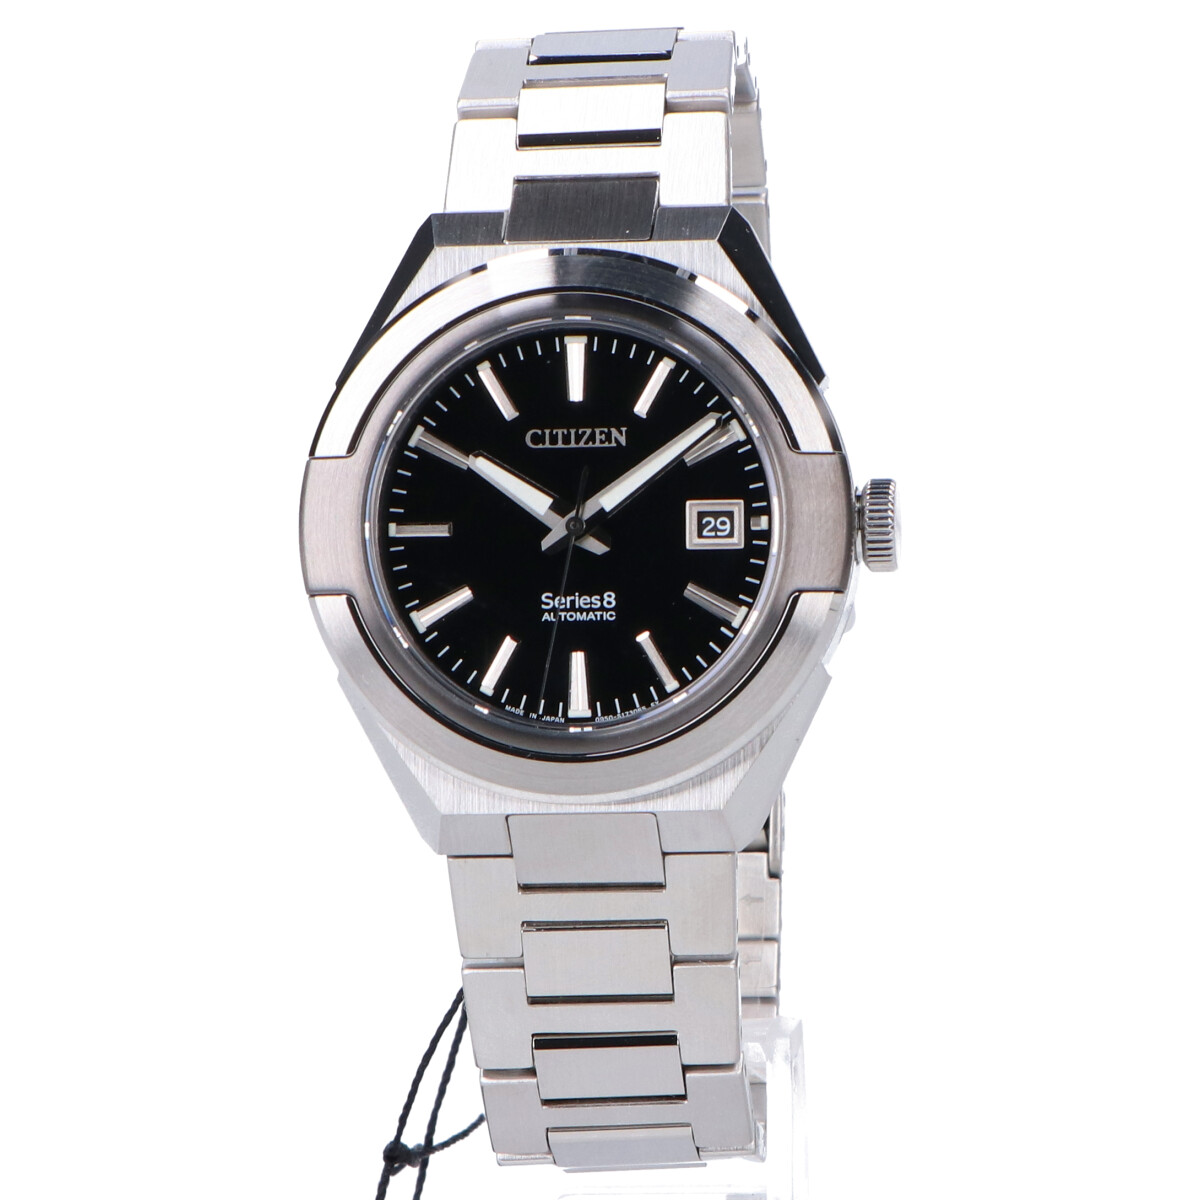 シチズンのNA1004-87E シリーズ8 870メカニカル自動巻き腕時計の買取実績です。